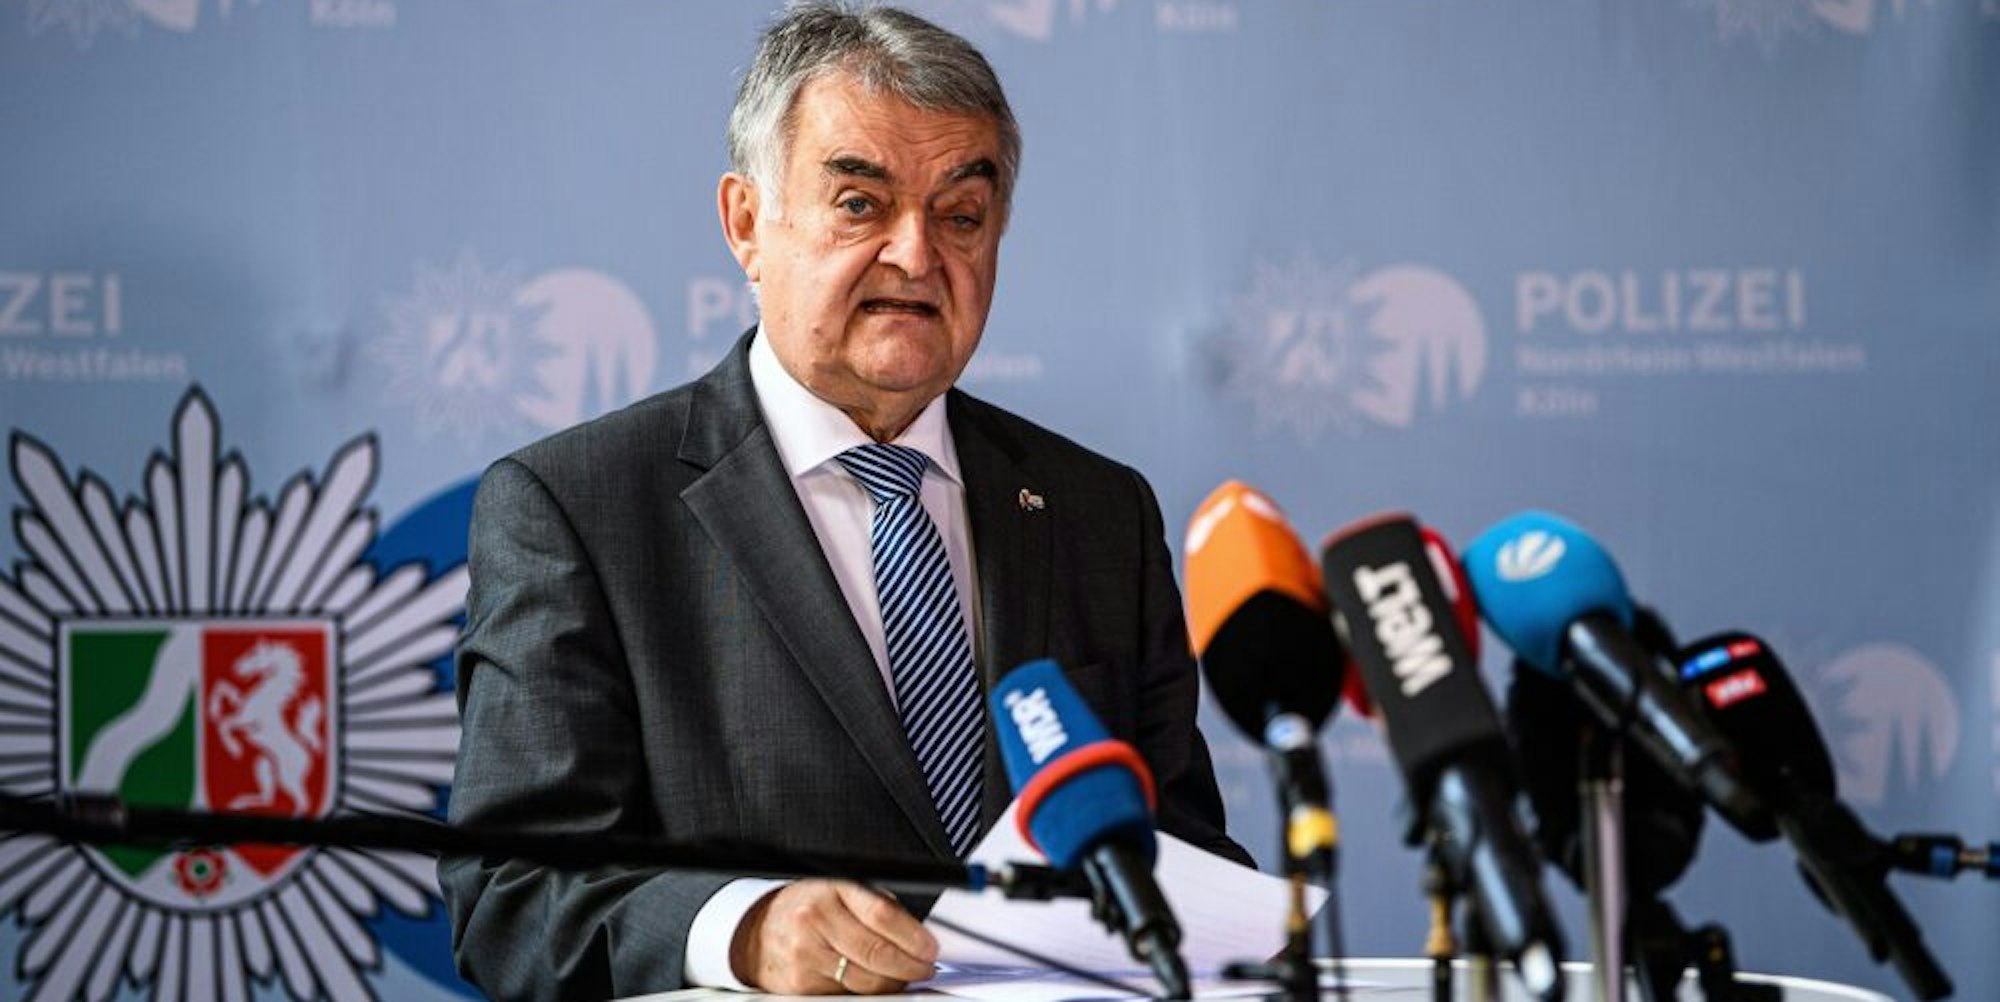 NRW-Innenminister Herbert Reul (CDU) sagte, es gab konkrete Hinweise auf einen Anschlag.